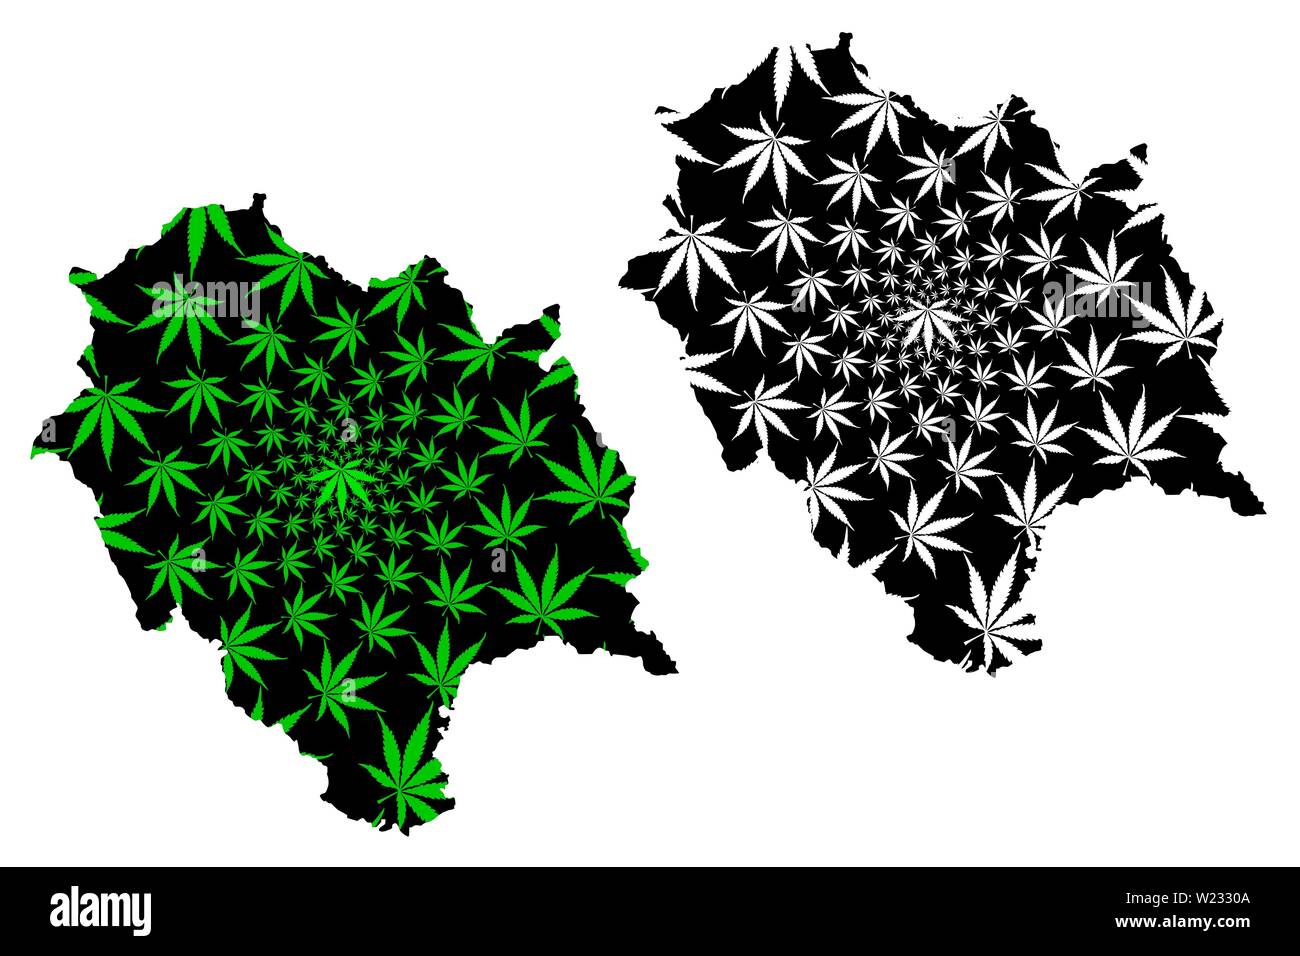 Himachal Pradesh (territori di India, Stati federati, la Repubblica dell' India) mappa è progettato Cannabis leaf verde e nero, Himachal Pradesh mappa Illustrazione Vettoriale